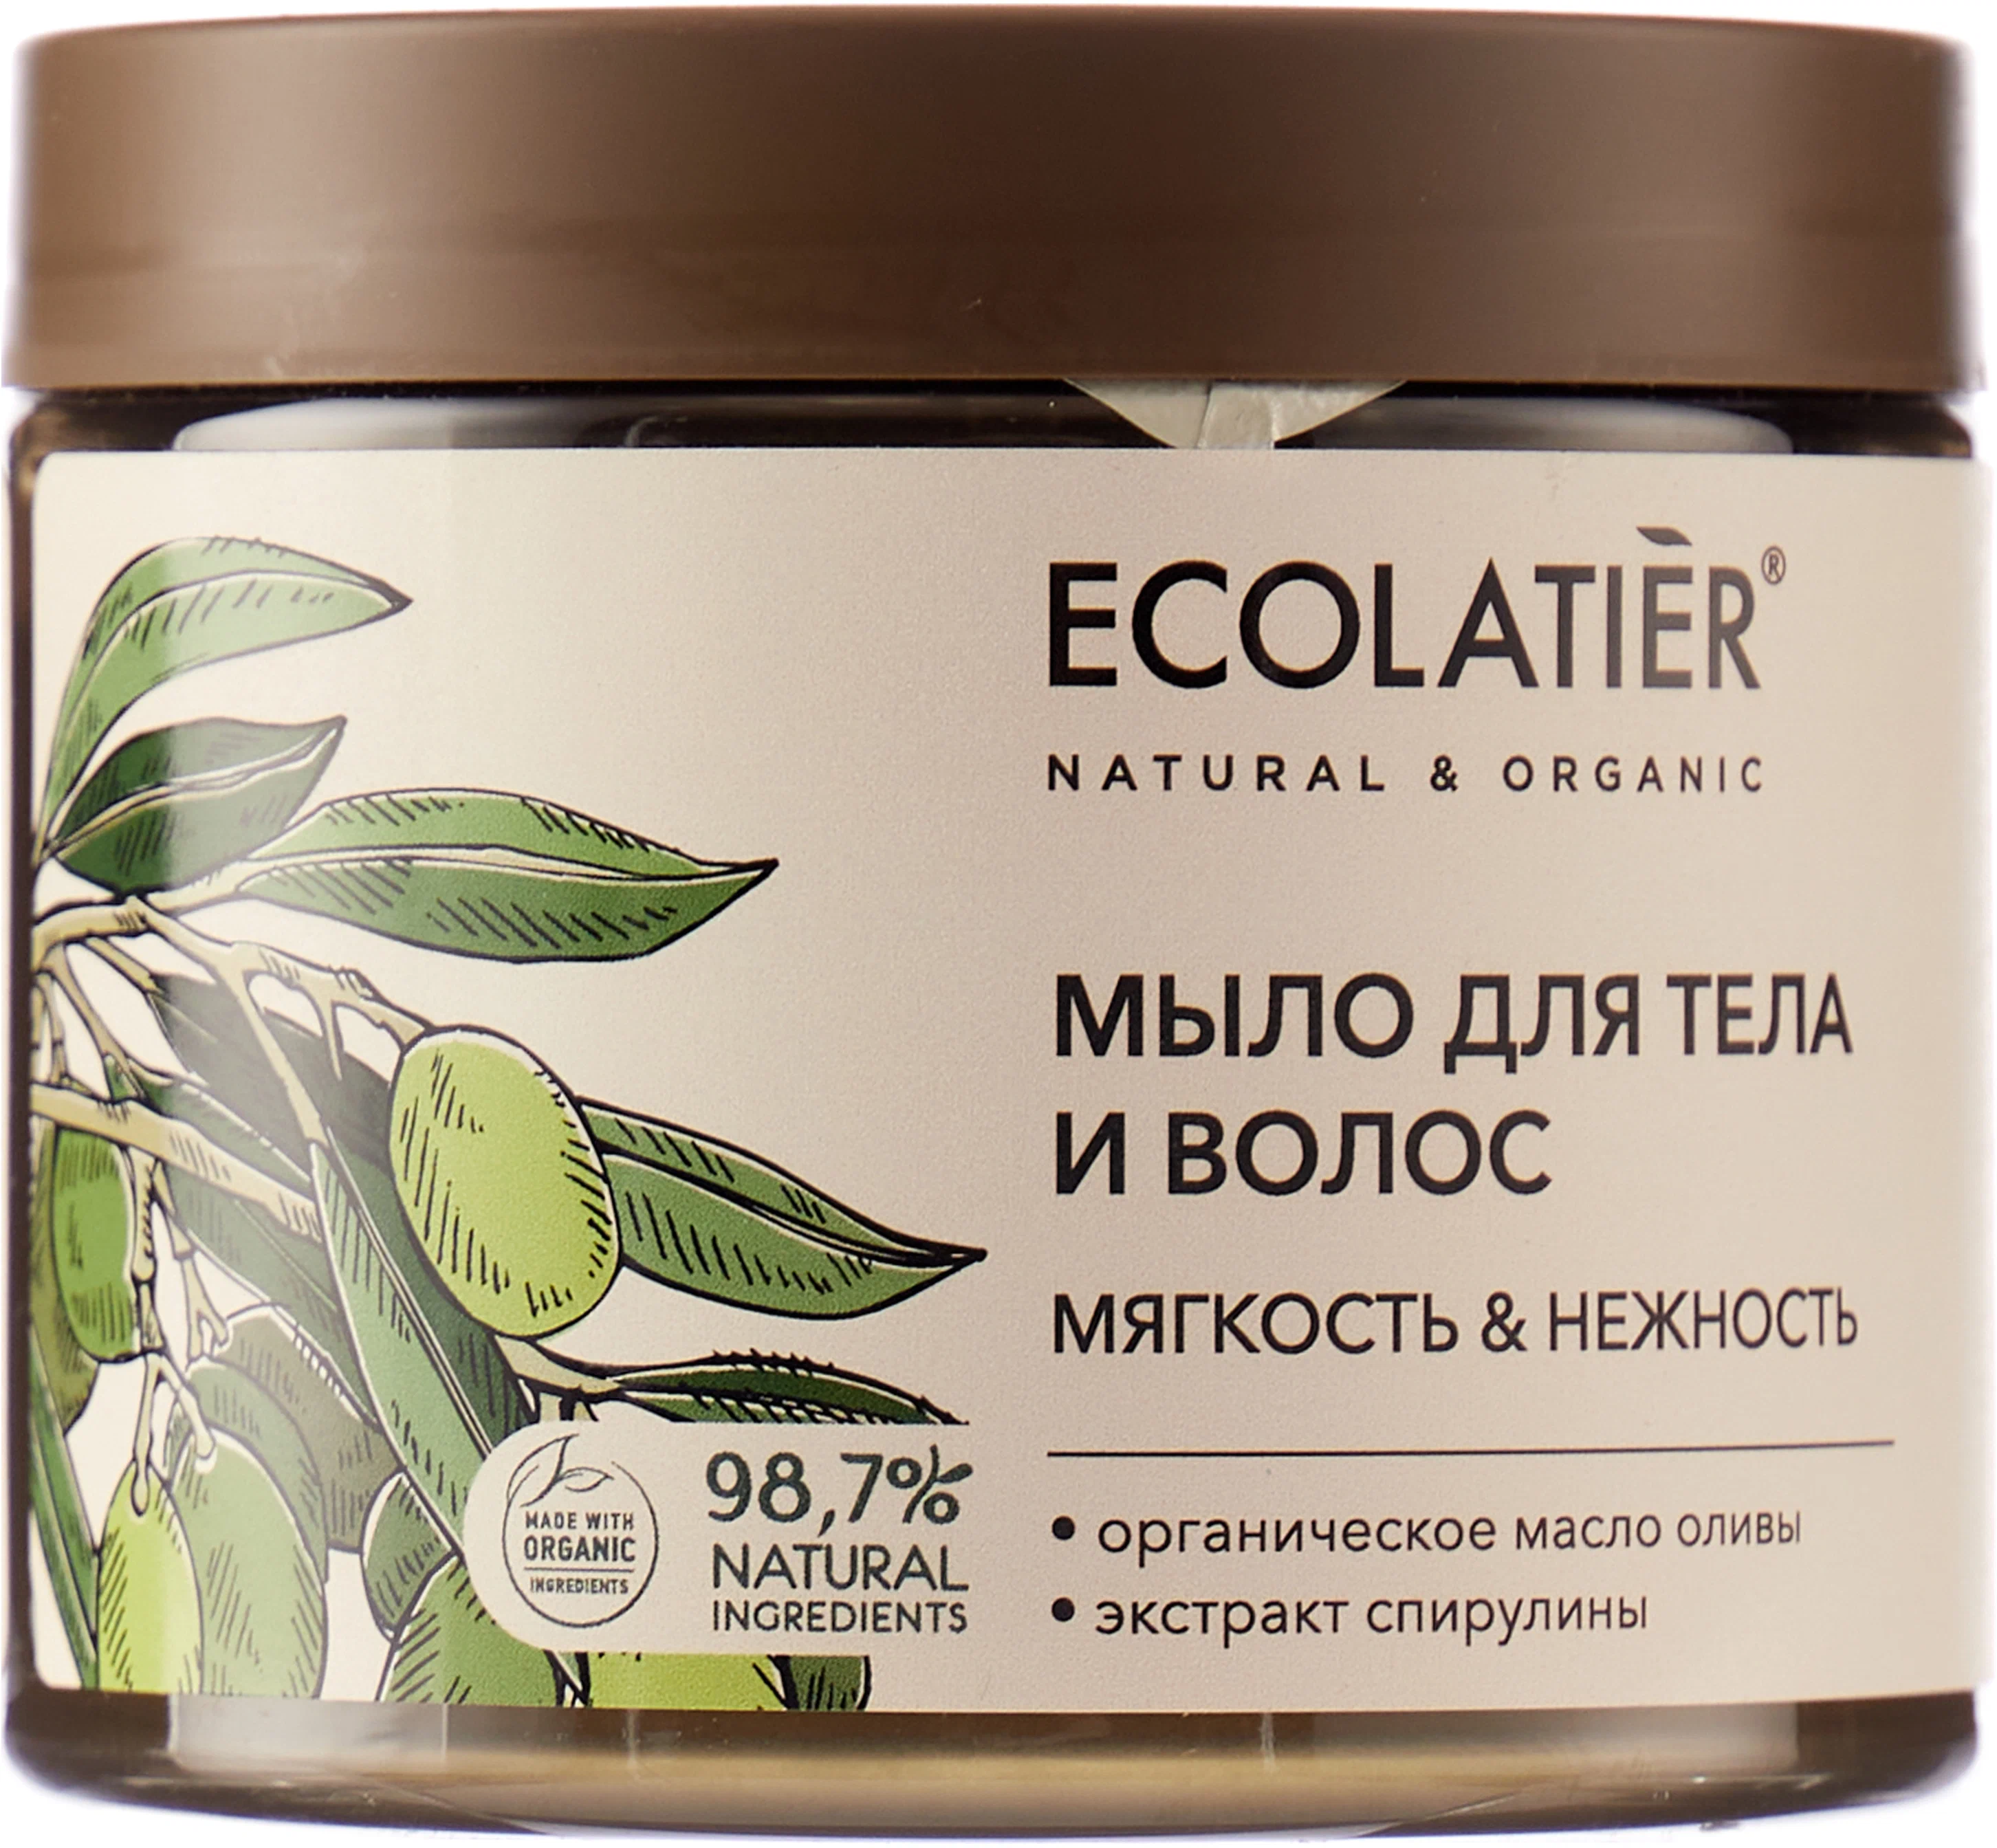 ECL GREEN Мыло для тела и волос Мягкость & Нежность Серия ORGANIC OLIVE, 350 мл